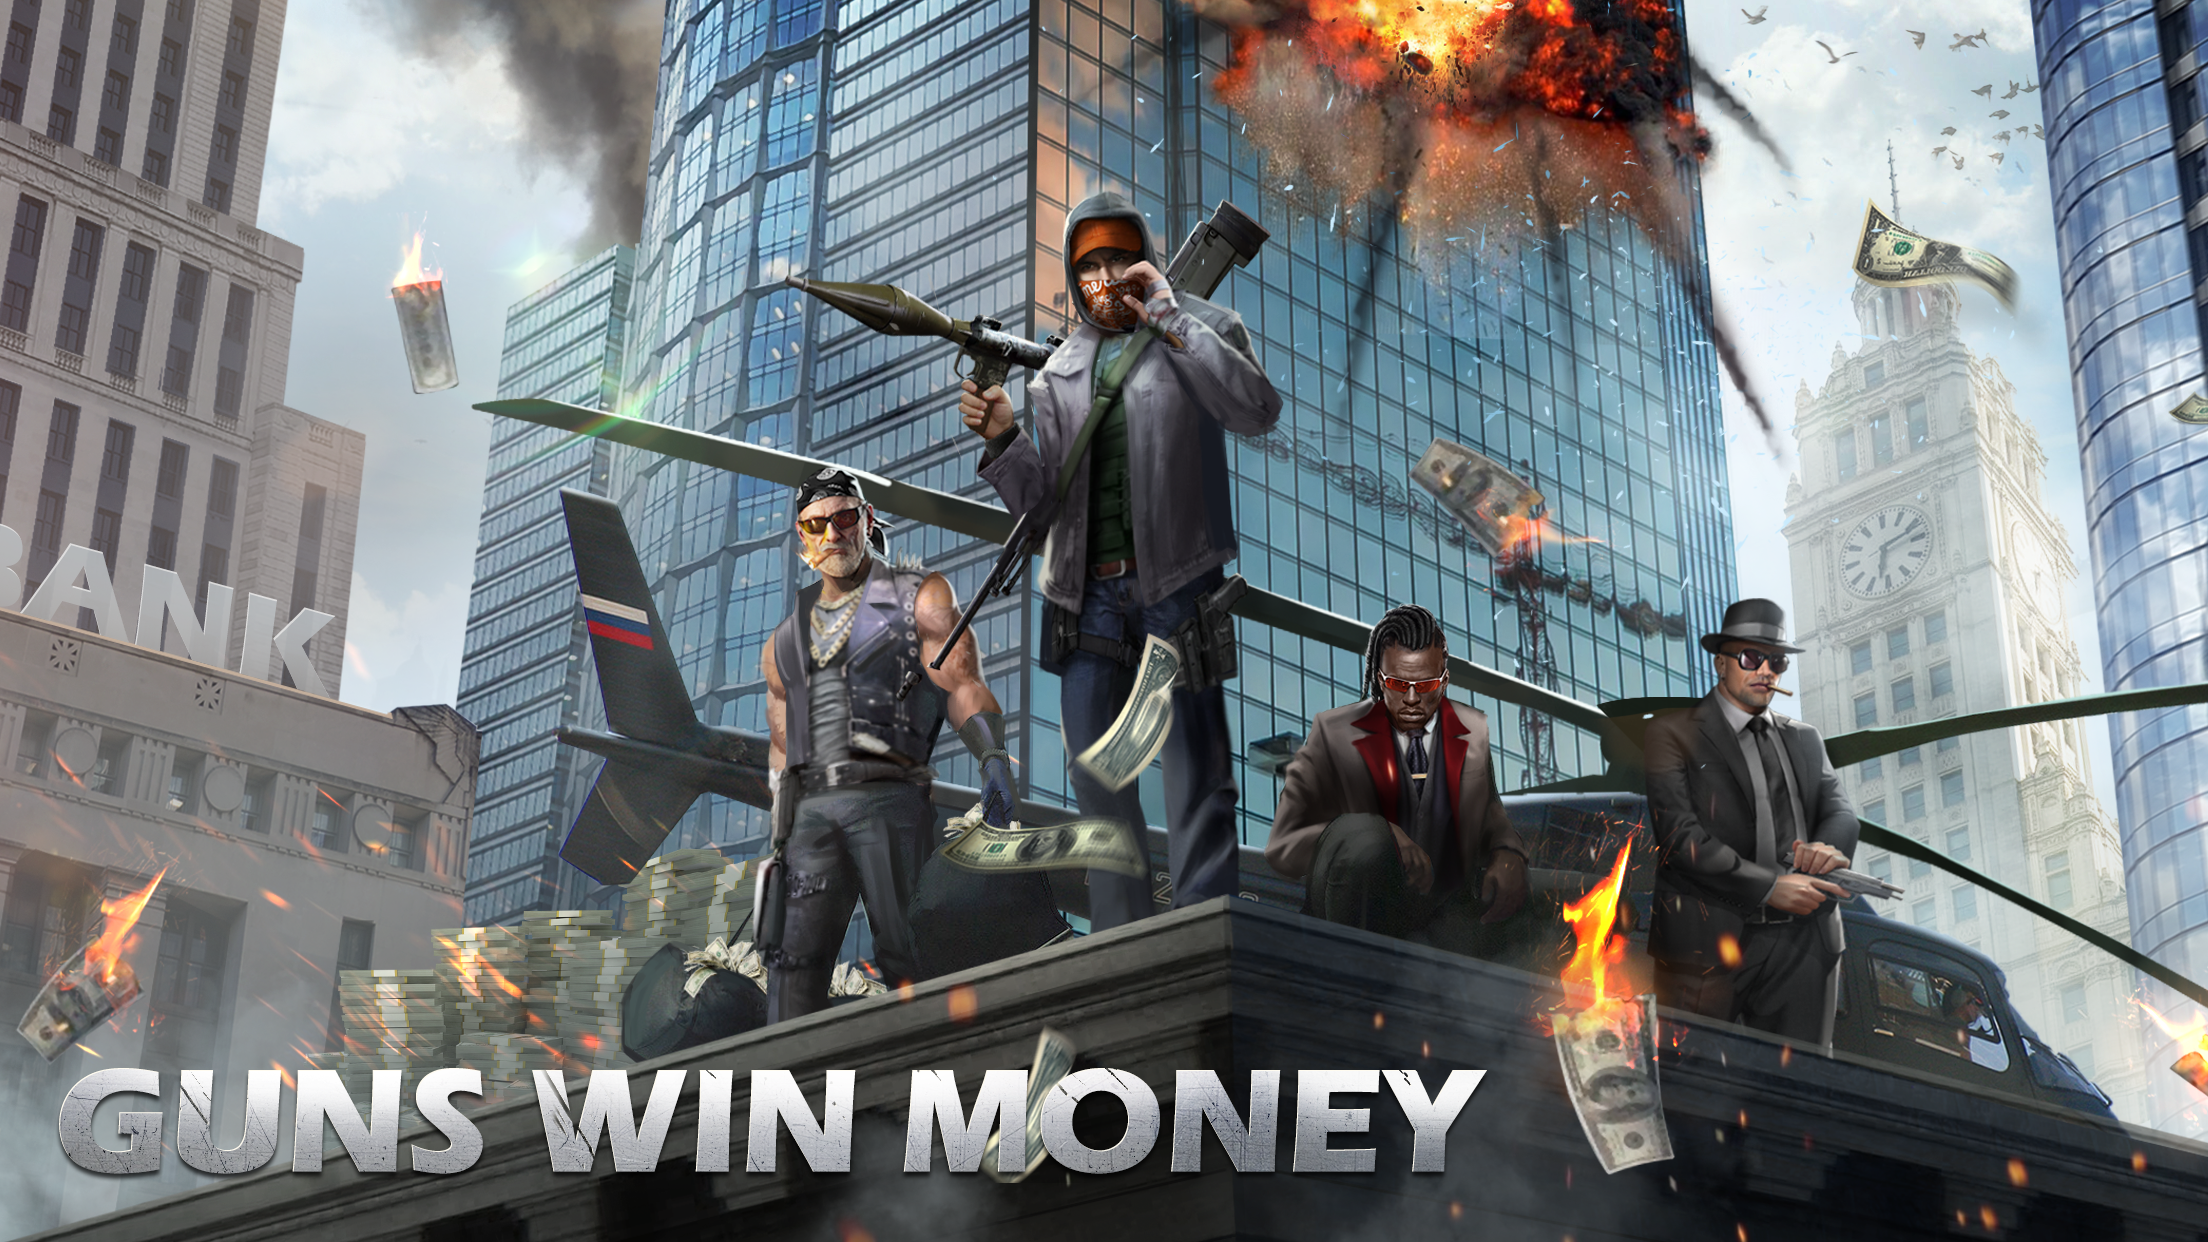 War Elite: City Survival 게임 스크린 샷